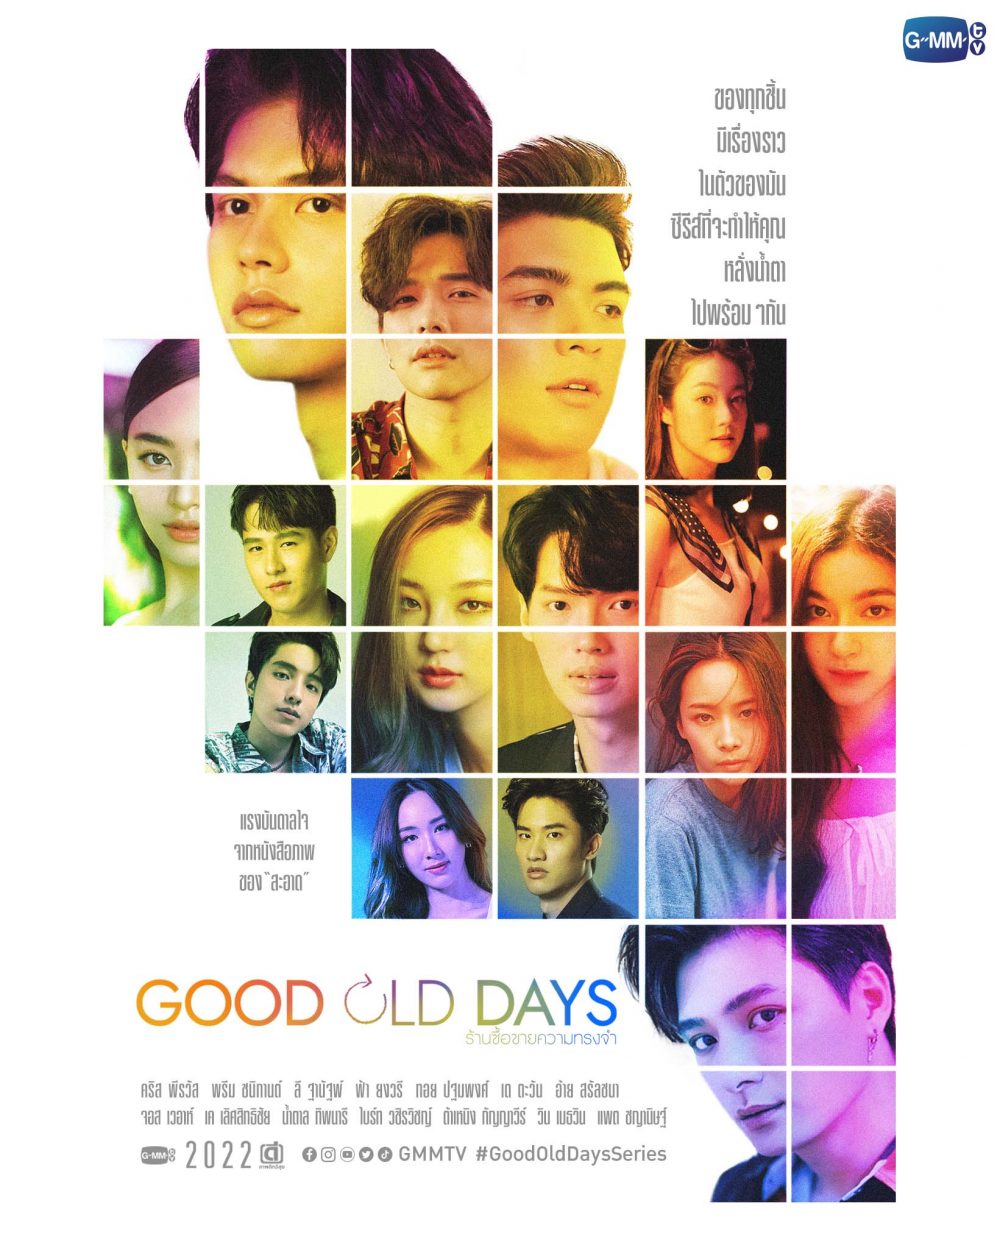 Phim Jirawat Sutivanichsak đóng: Những ngày xưa thân ái – Good old days (2022)